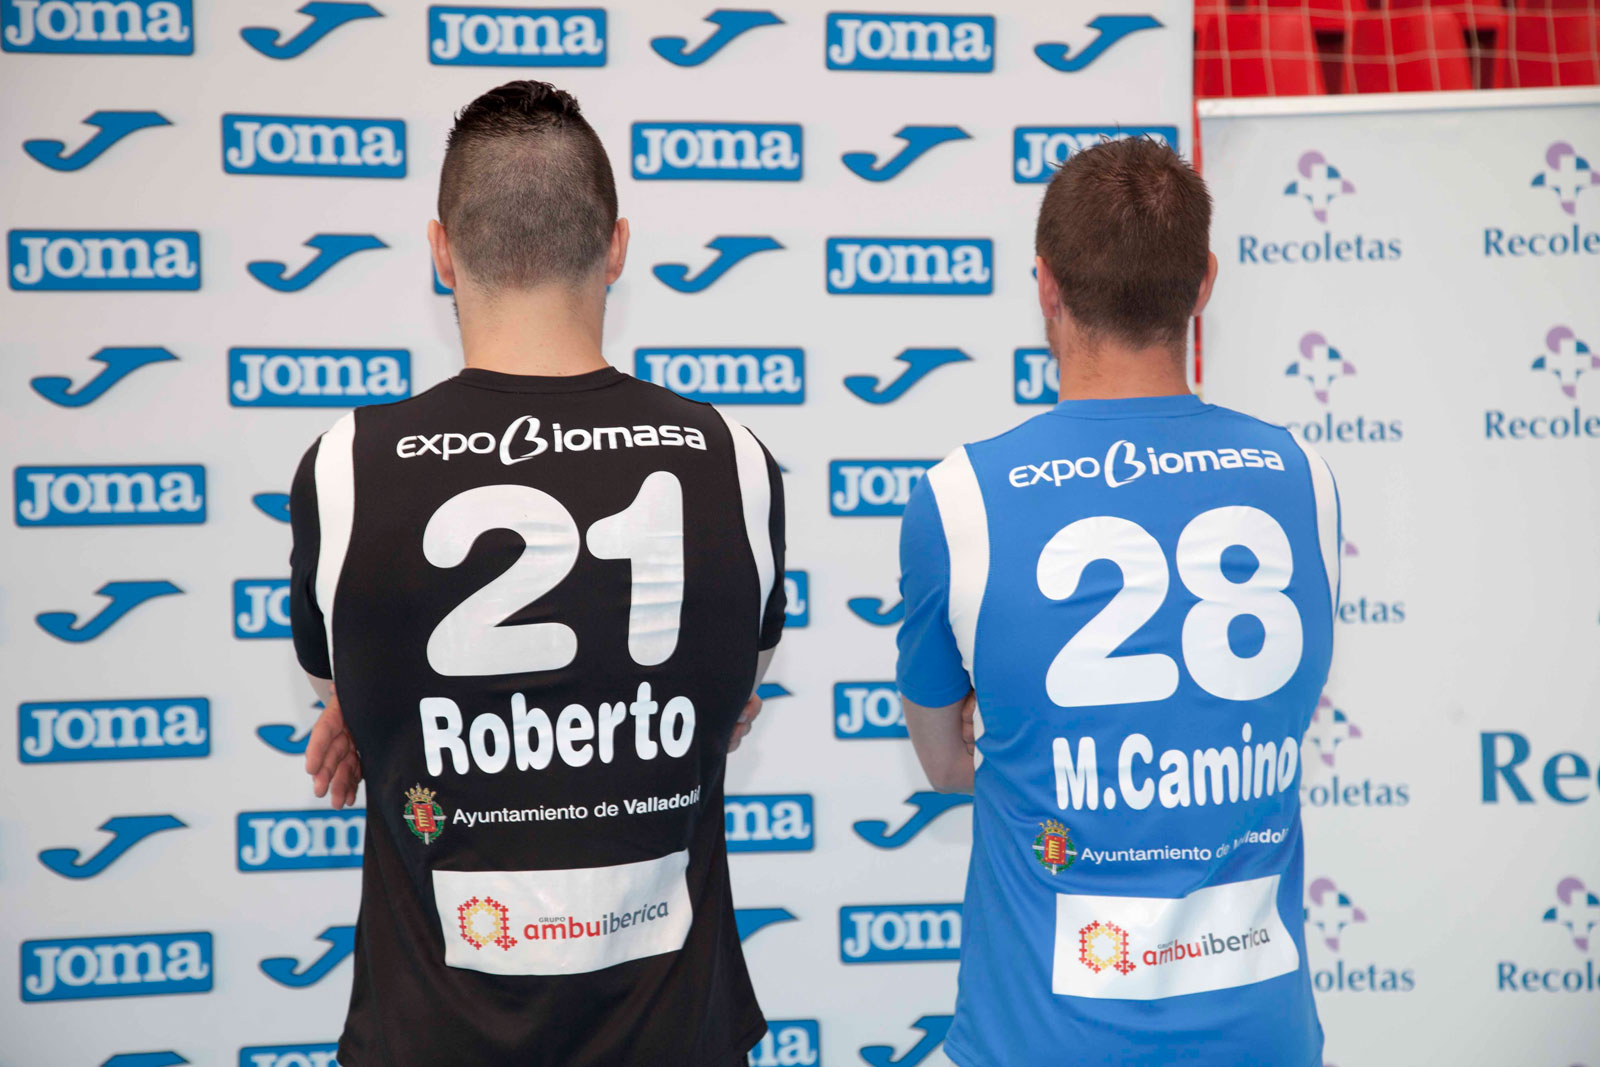 El Recoletas Atlético Valladolid presenta sus nuevas camisetas junto a Joma y Deportes Chema | Galería 5 / 8